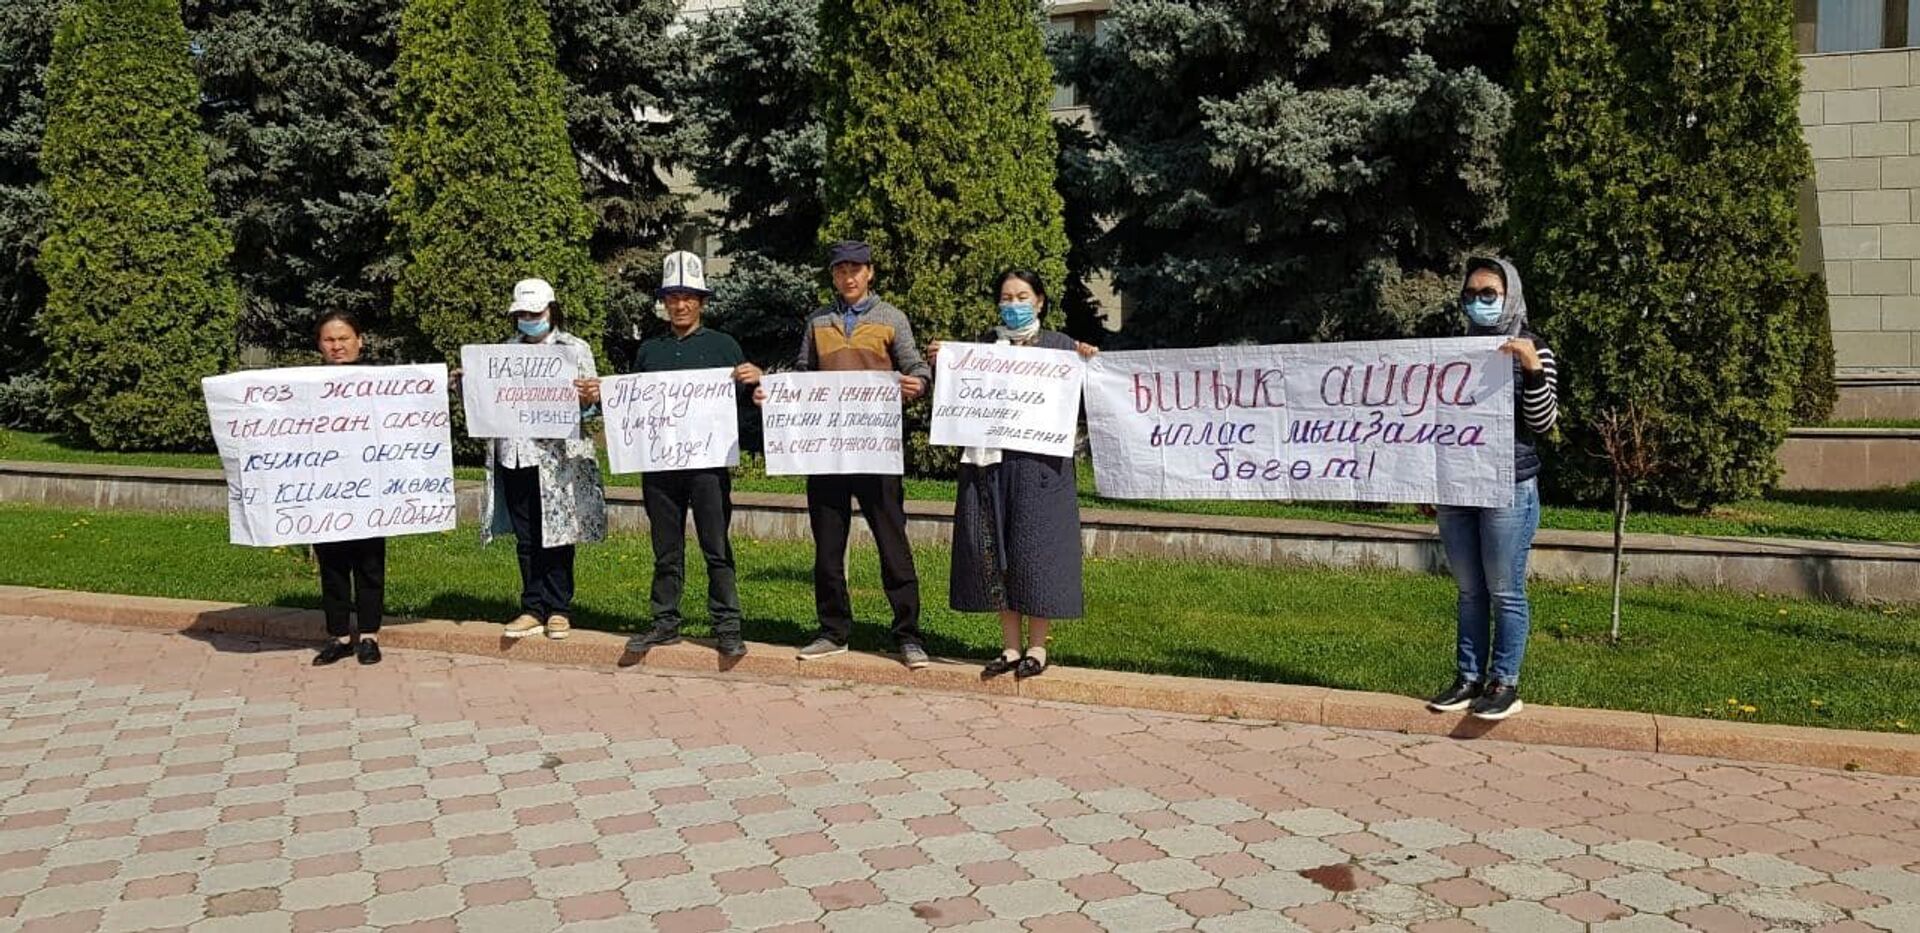 В центре Бишкека проходит митинг против легализации казино - Sputnik Кыргызстан, 1920, 15.04.2021